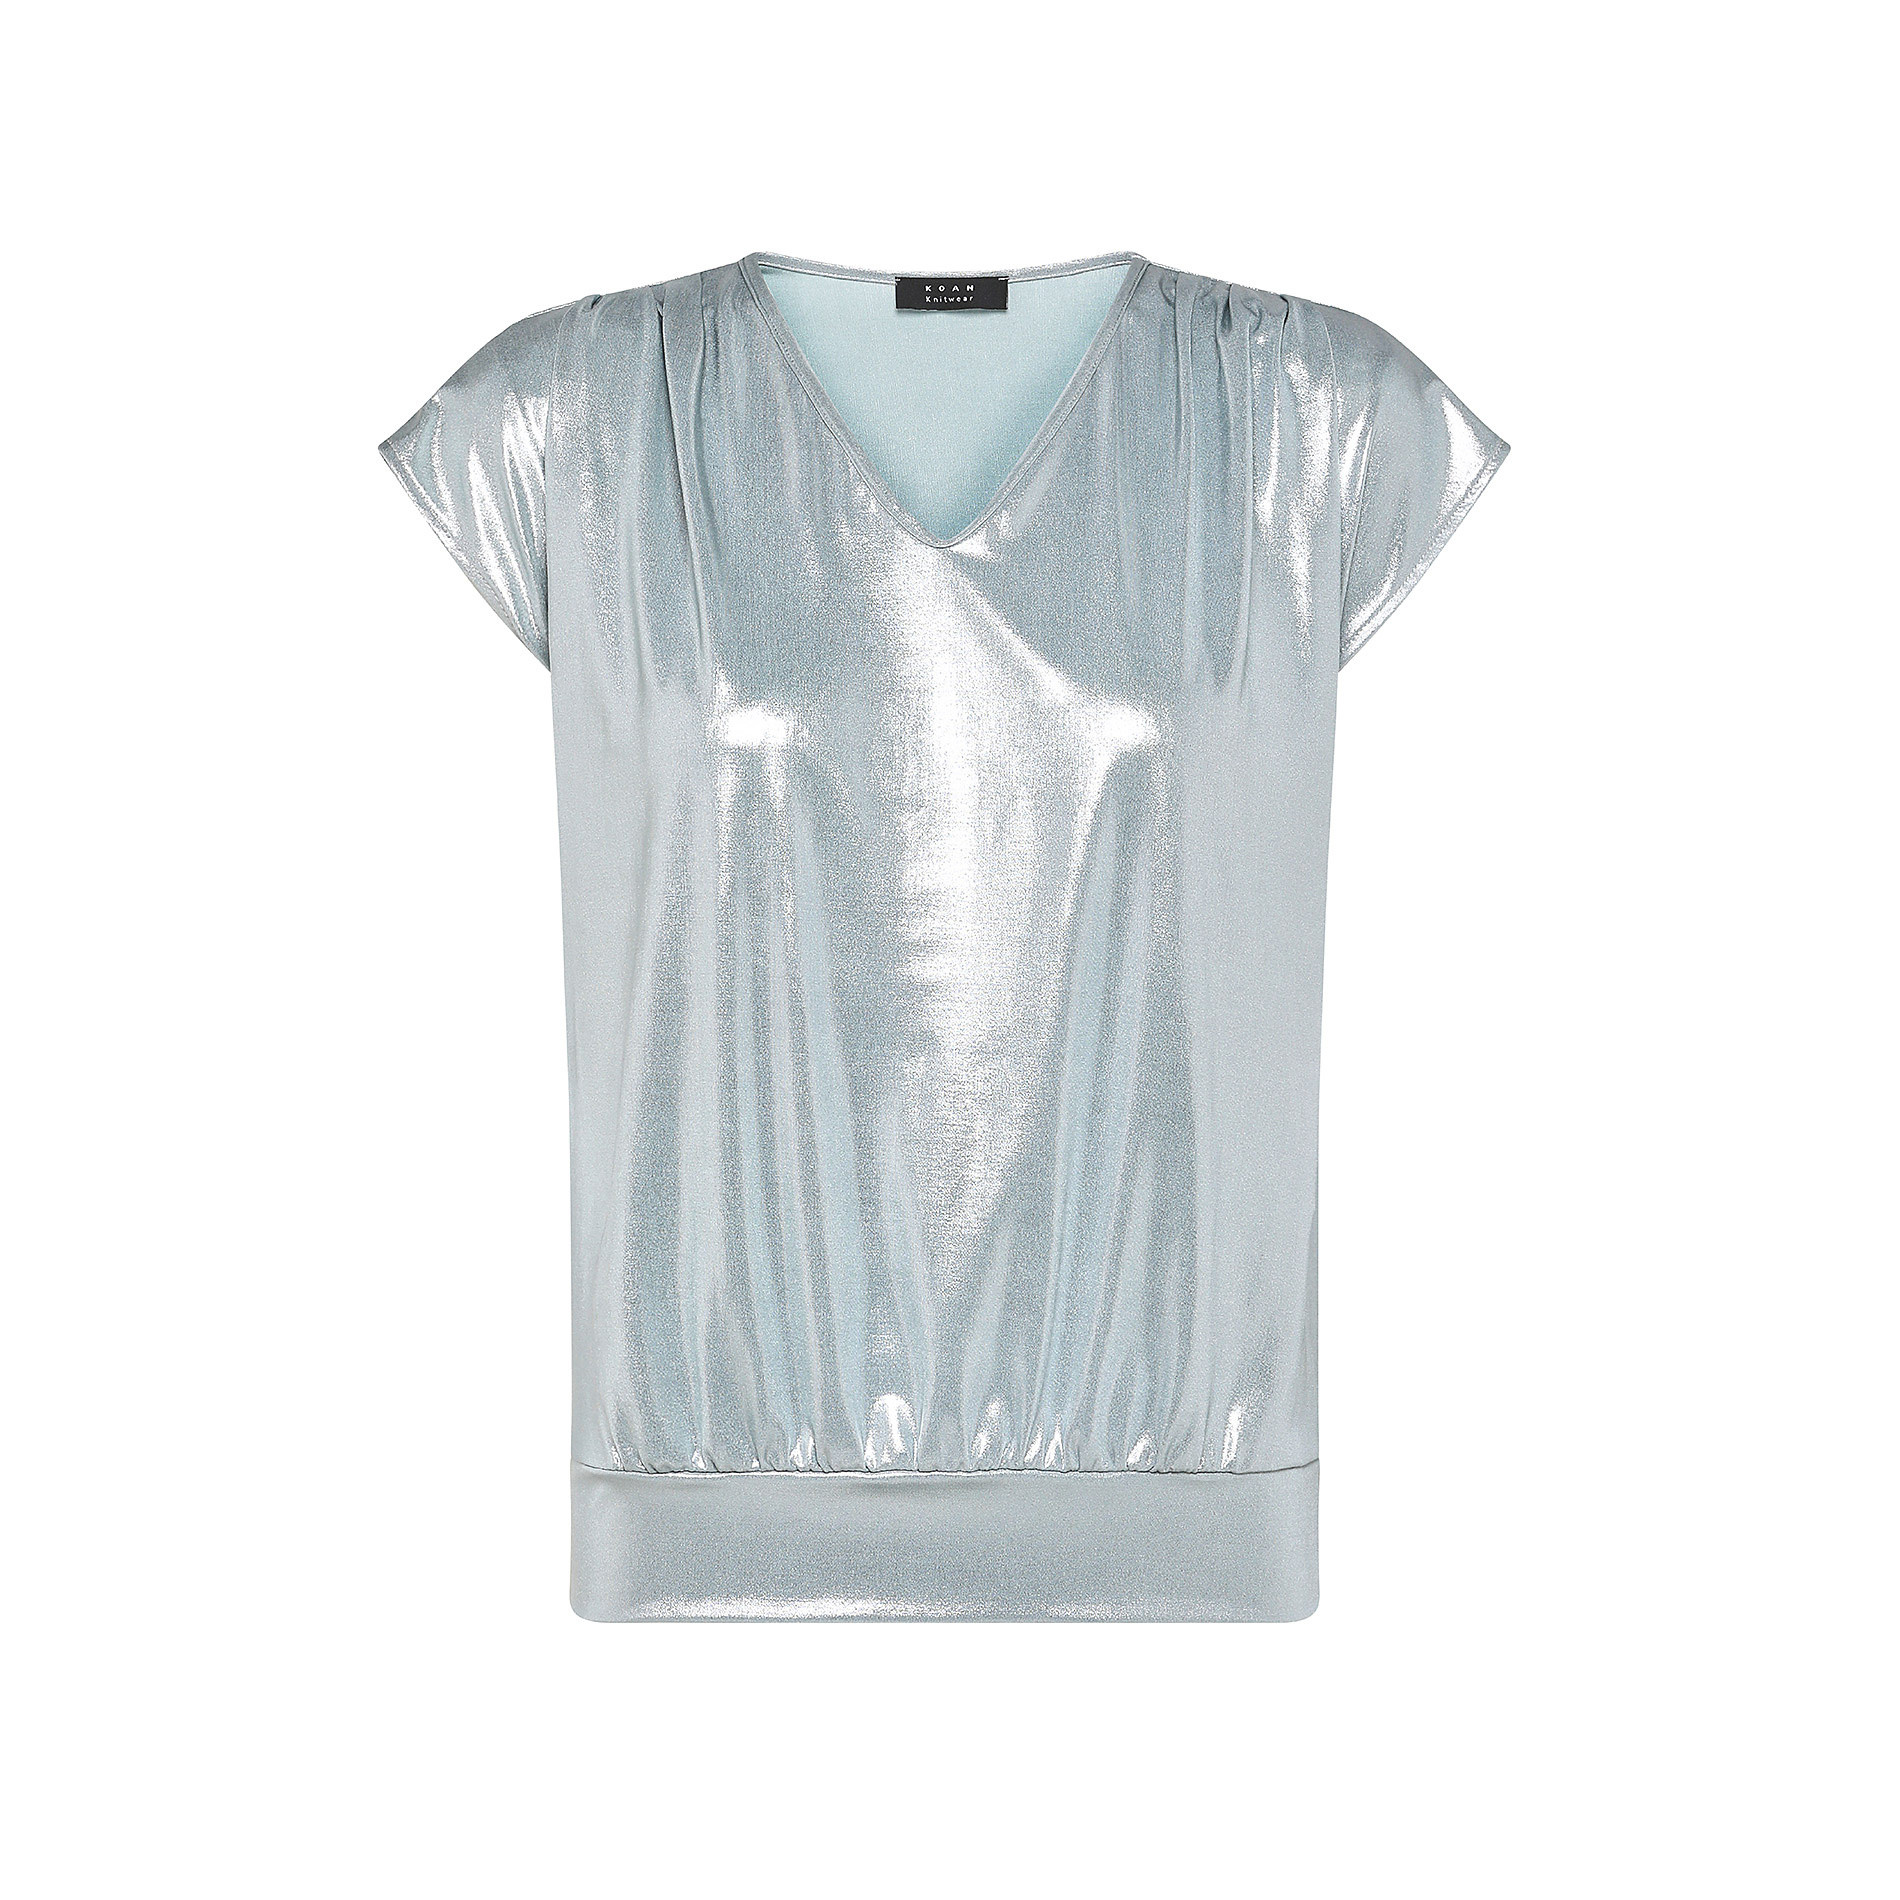 T-shirt scollo V tessuto lucido Koan, Azzurro, large